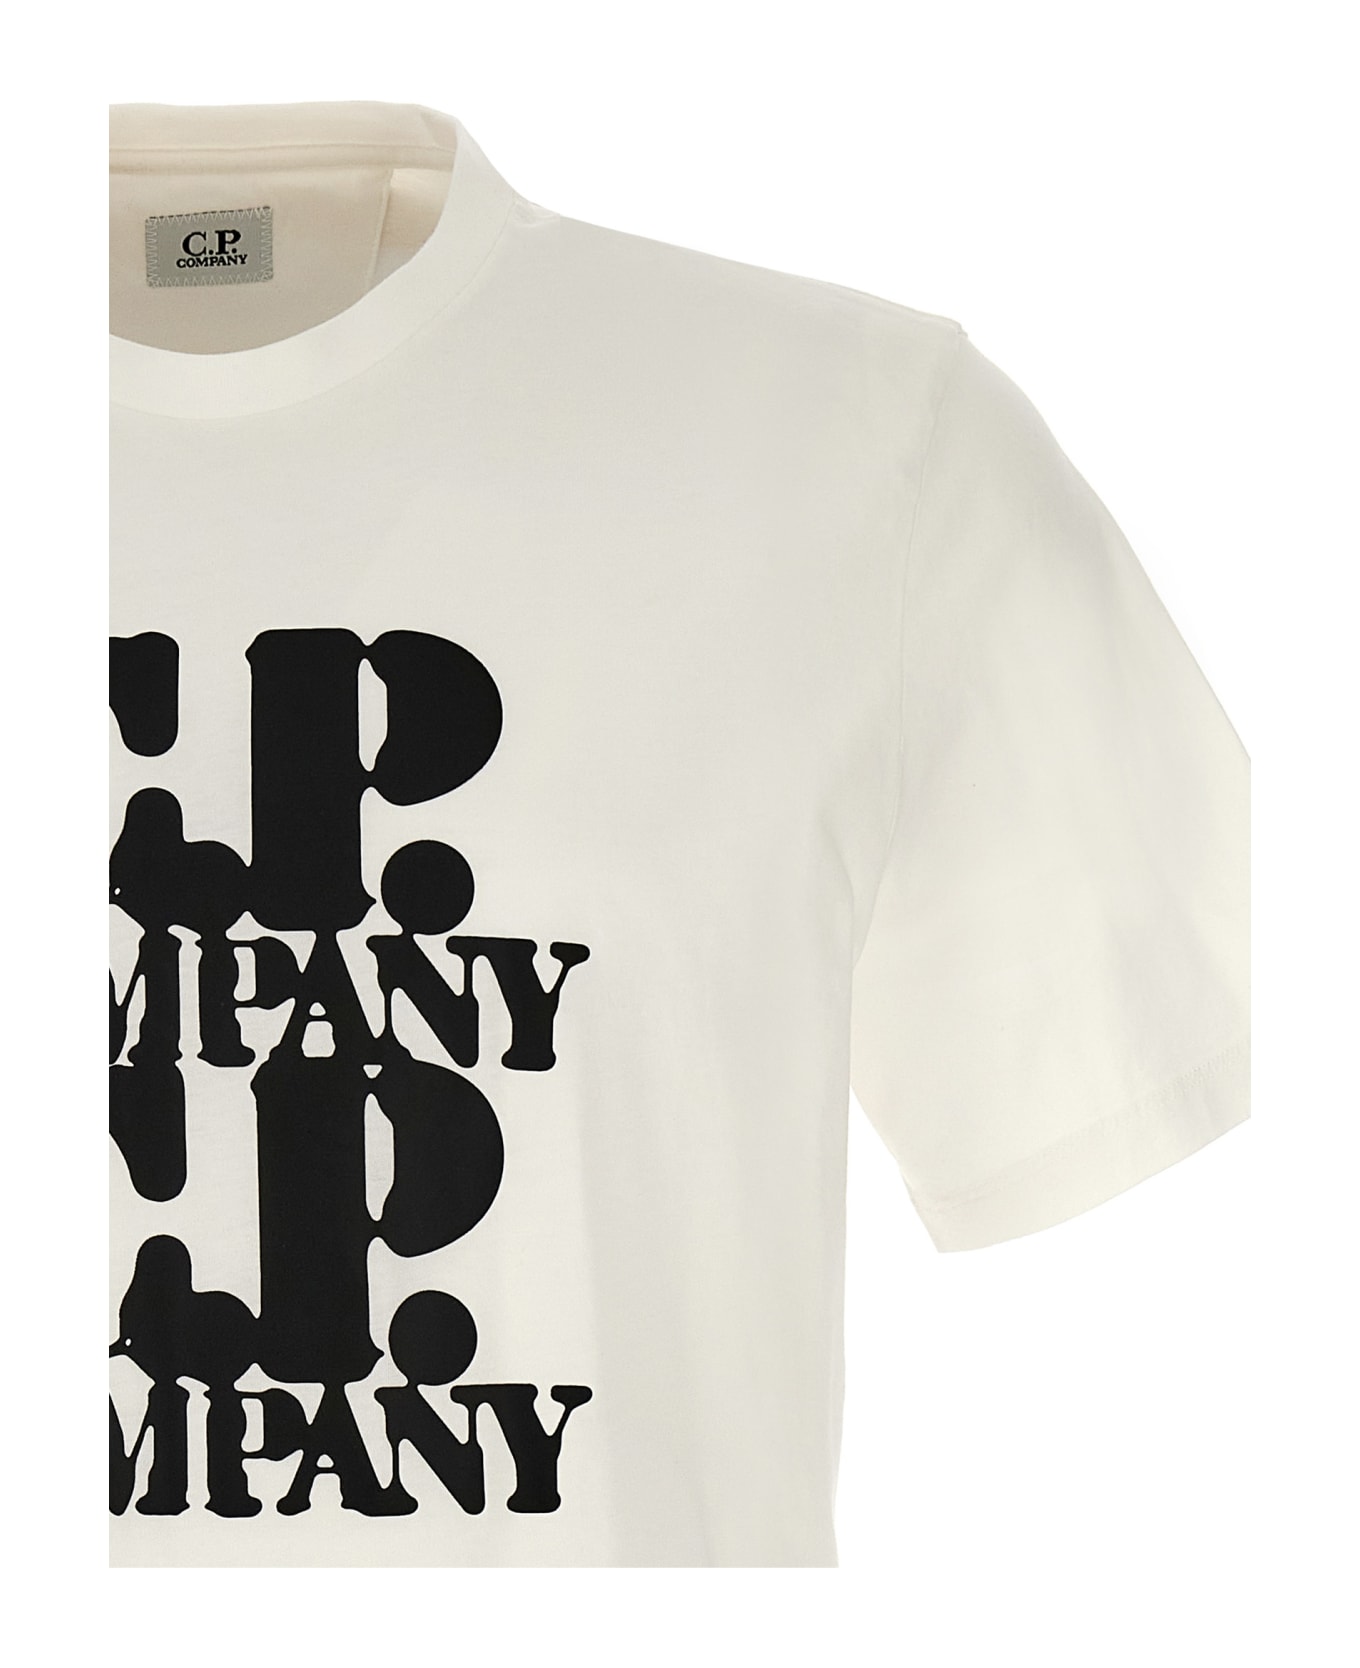 C.P. Company 'graphic' T-shirt - WHITE